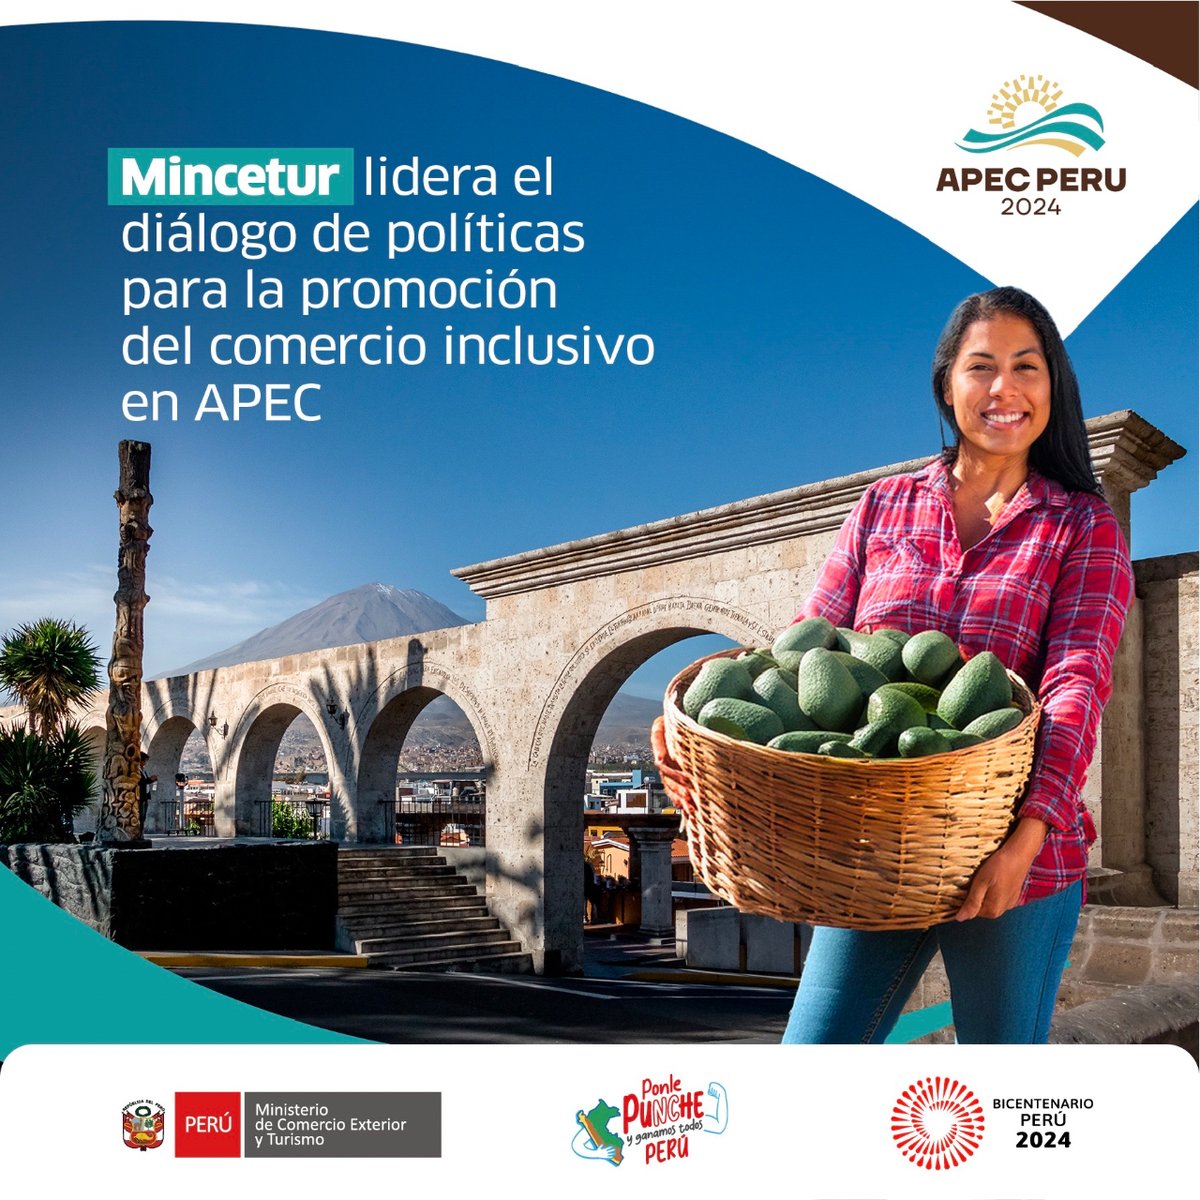 ¡En #Arequipa, #Mincetur lidera un diálogo clave entre las economías de APEC! 💪
Se centra en promover el comercio inclusivo para impulsar el crecimiento de las Mipymes y su transición a la economía formal.👏